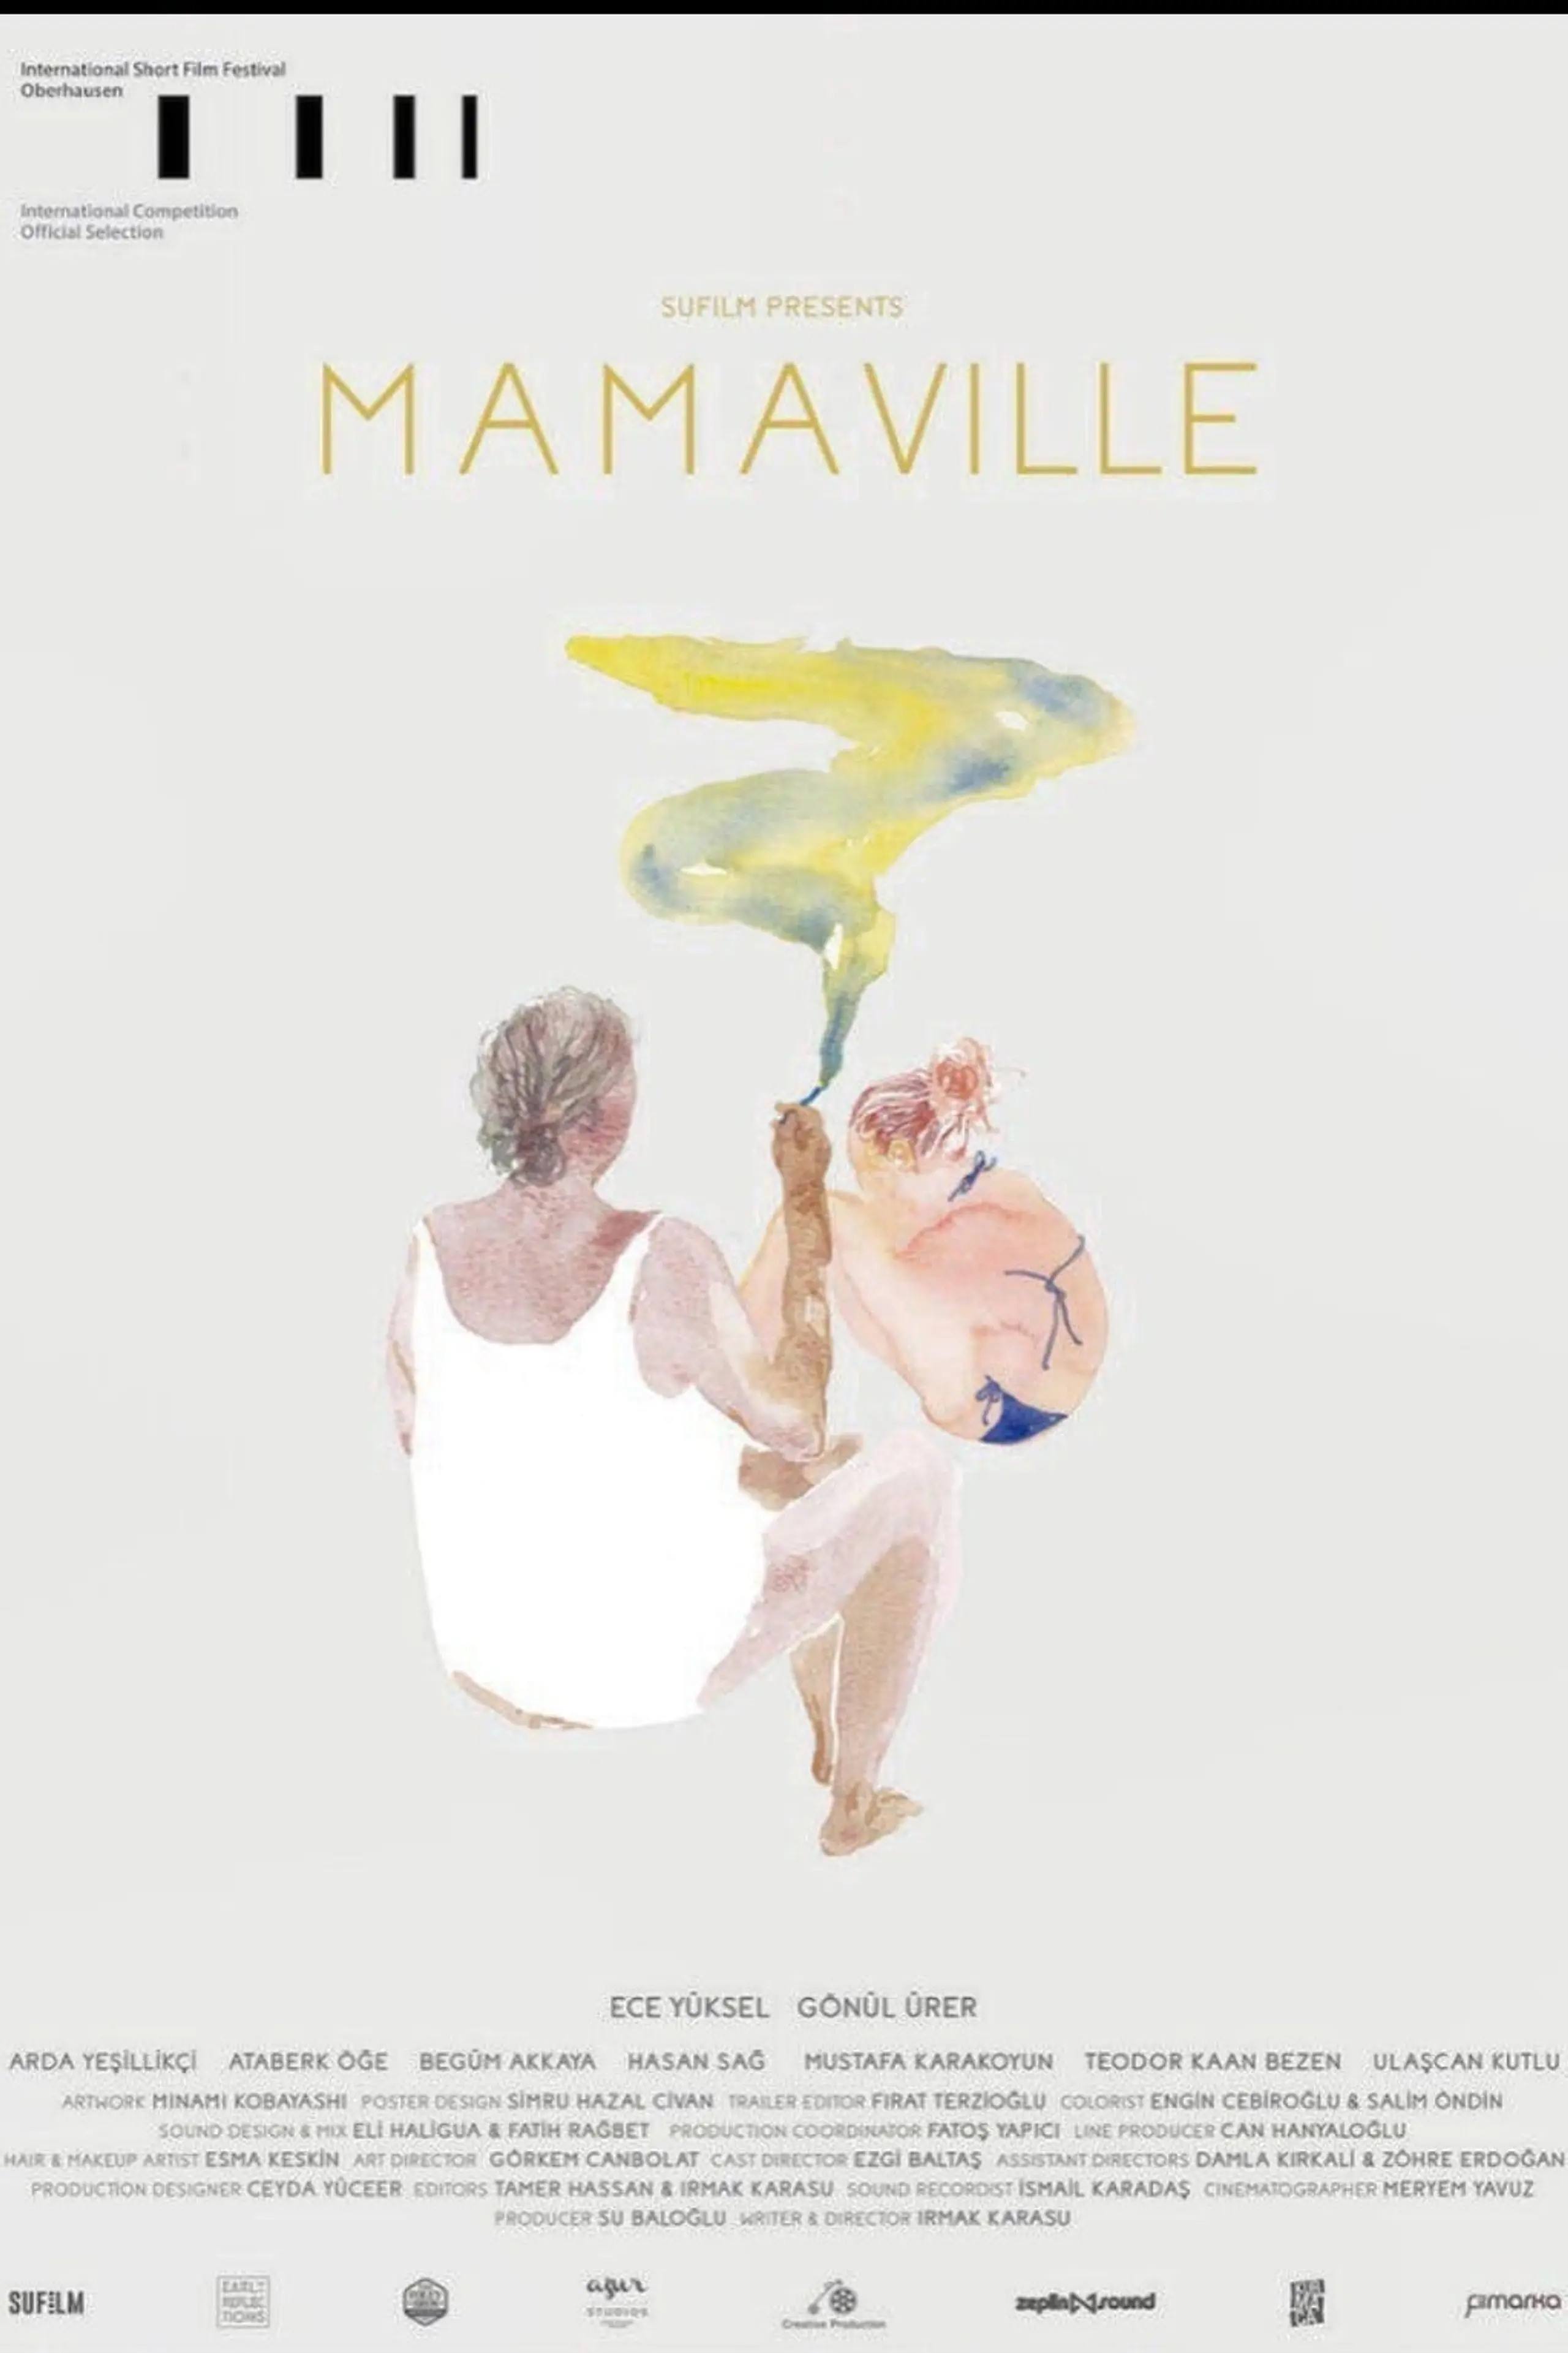 Mamaville